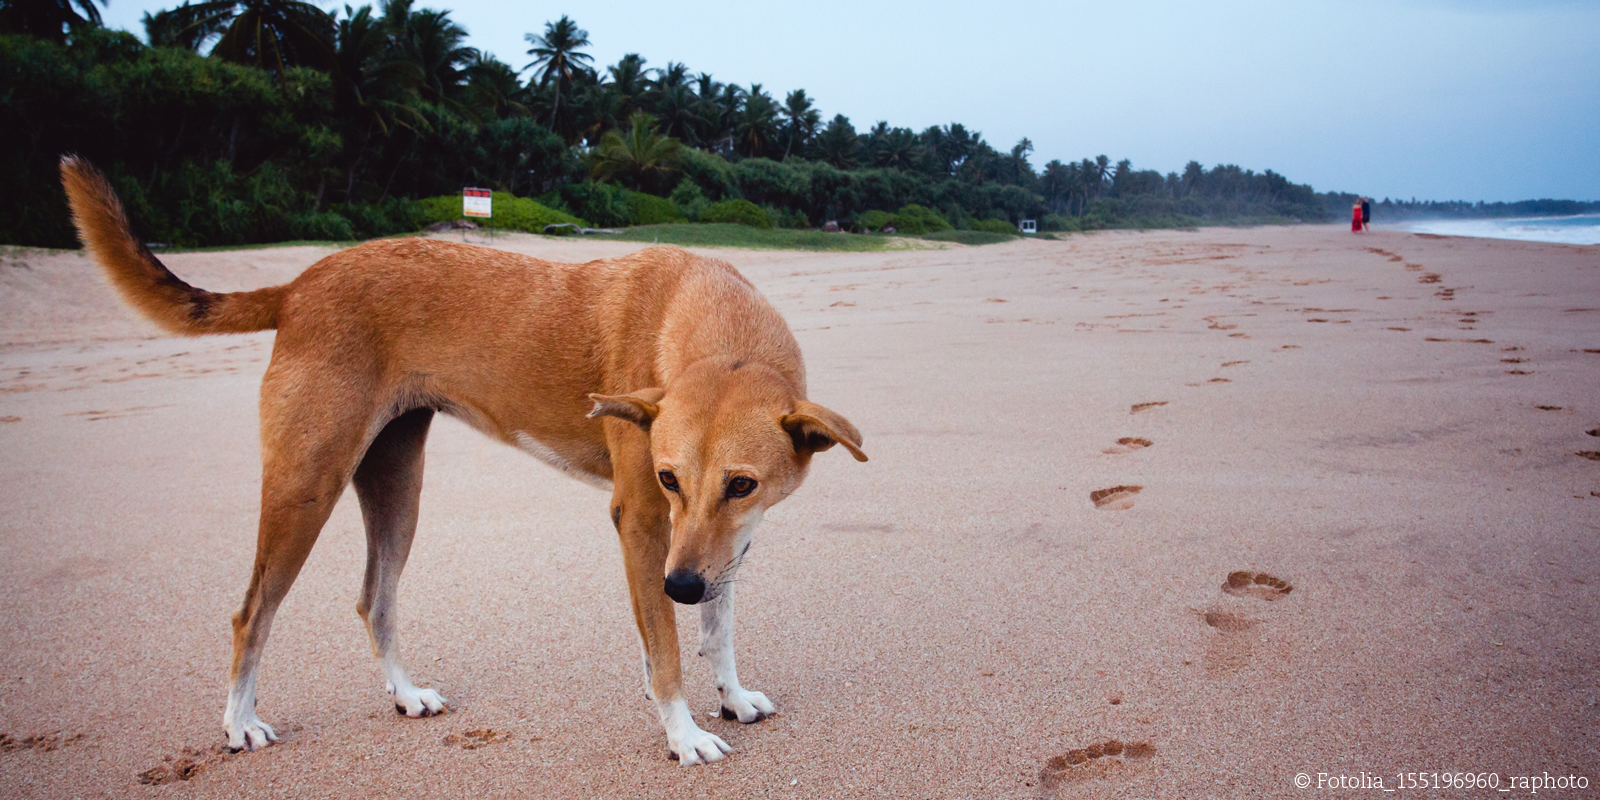 Tierklinik in Thailand: Ein streunender Hund am Strand in Thailand